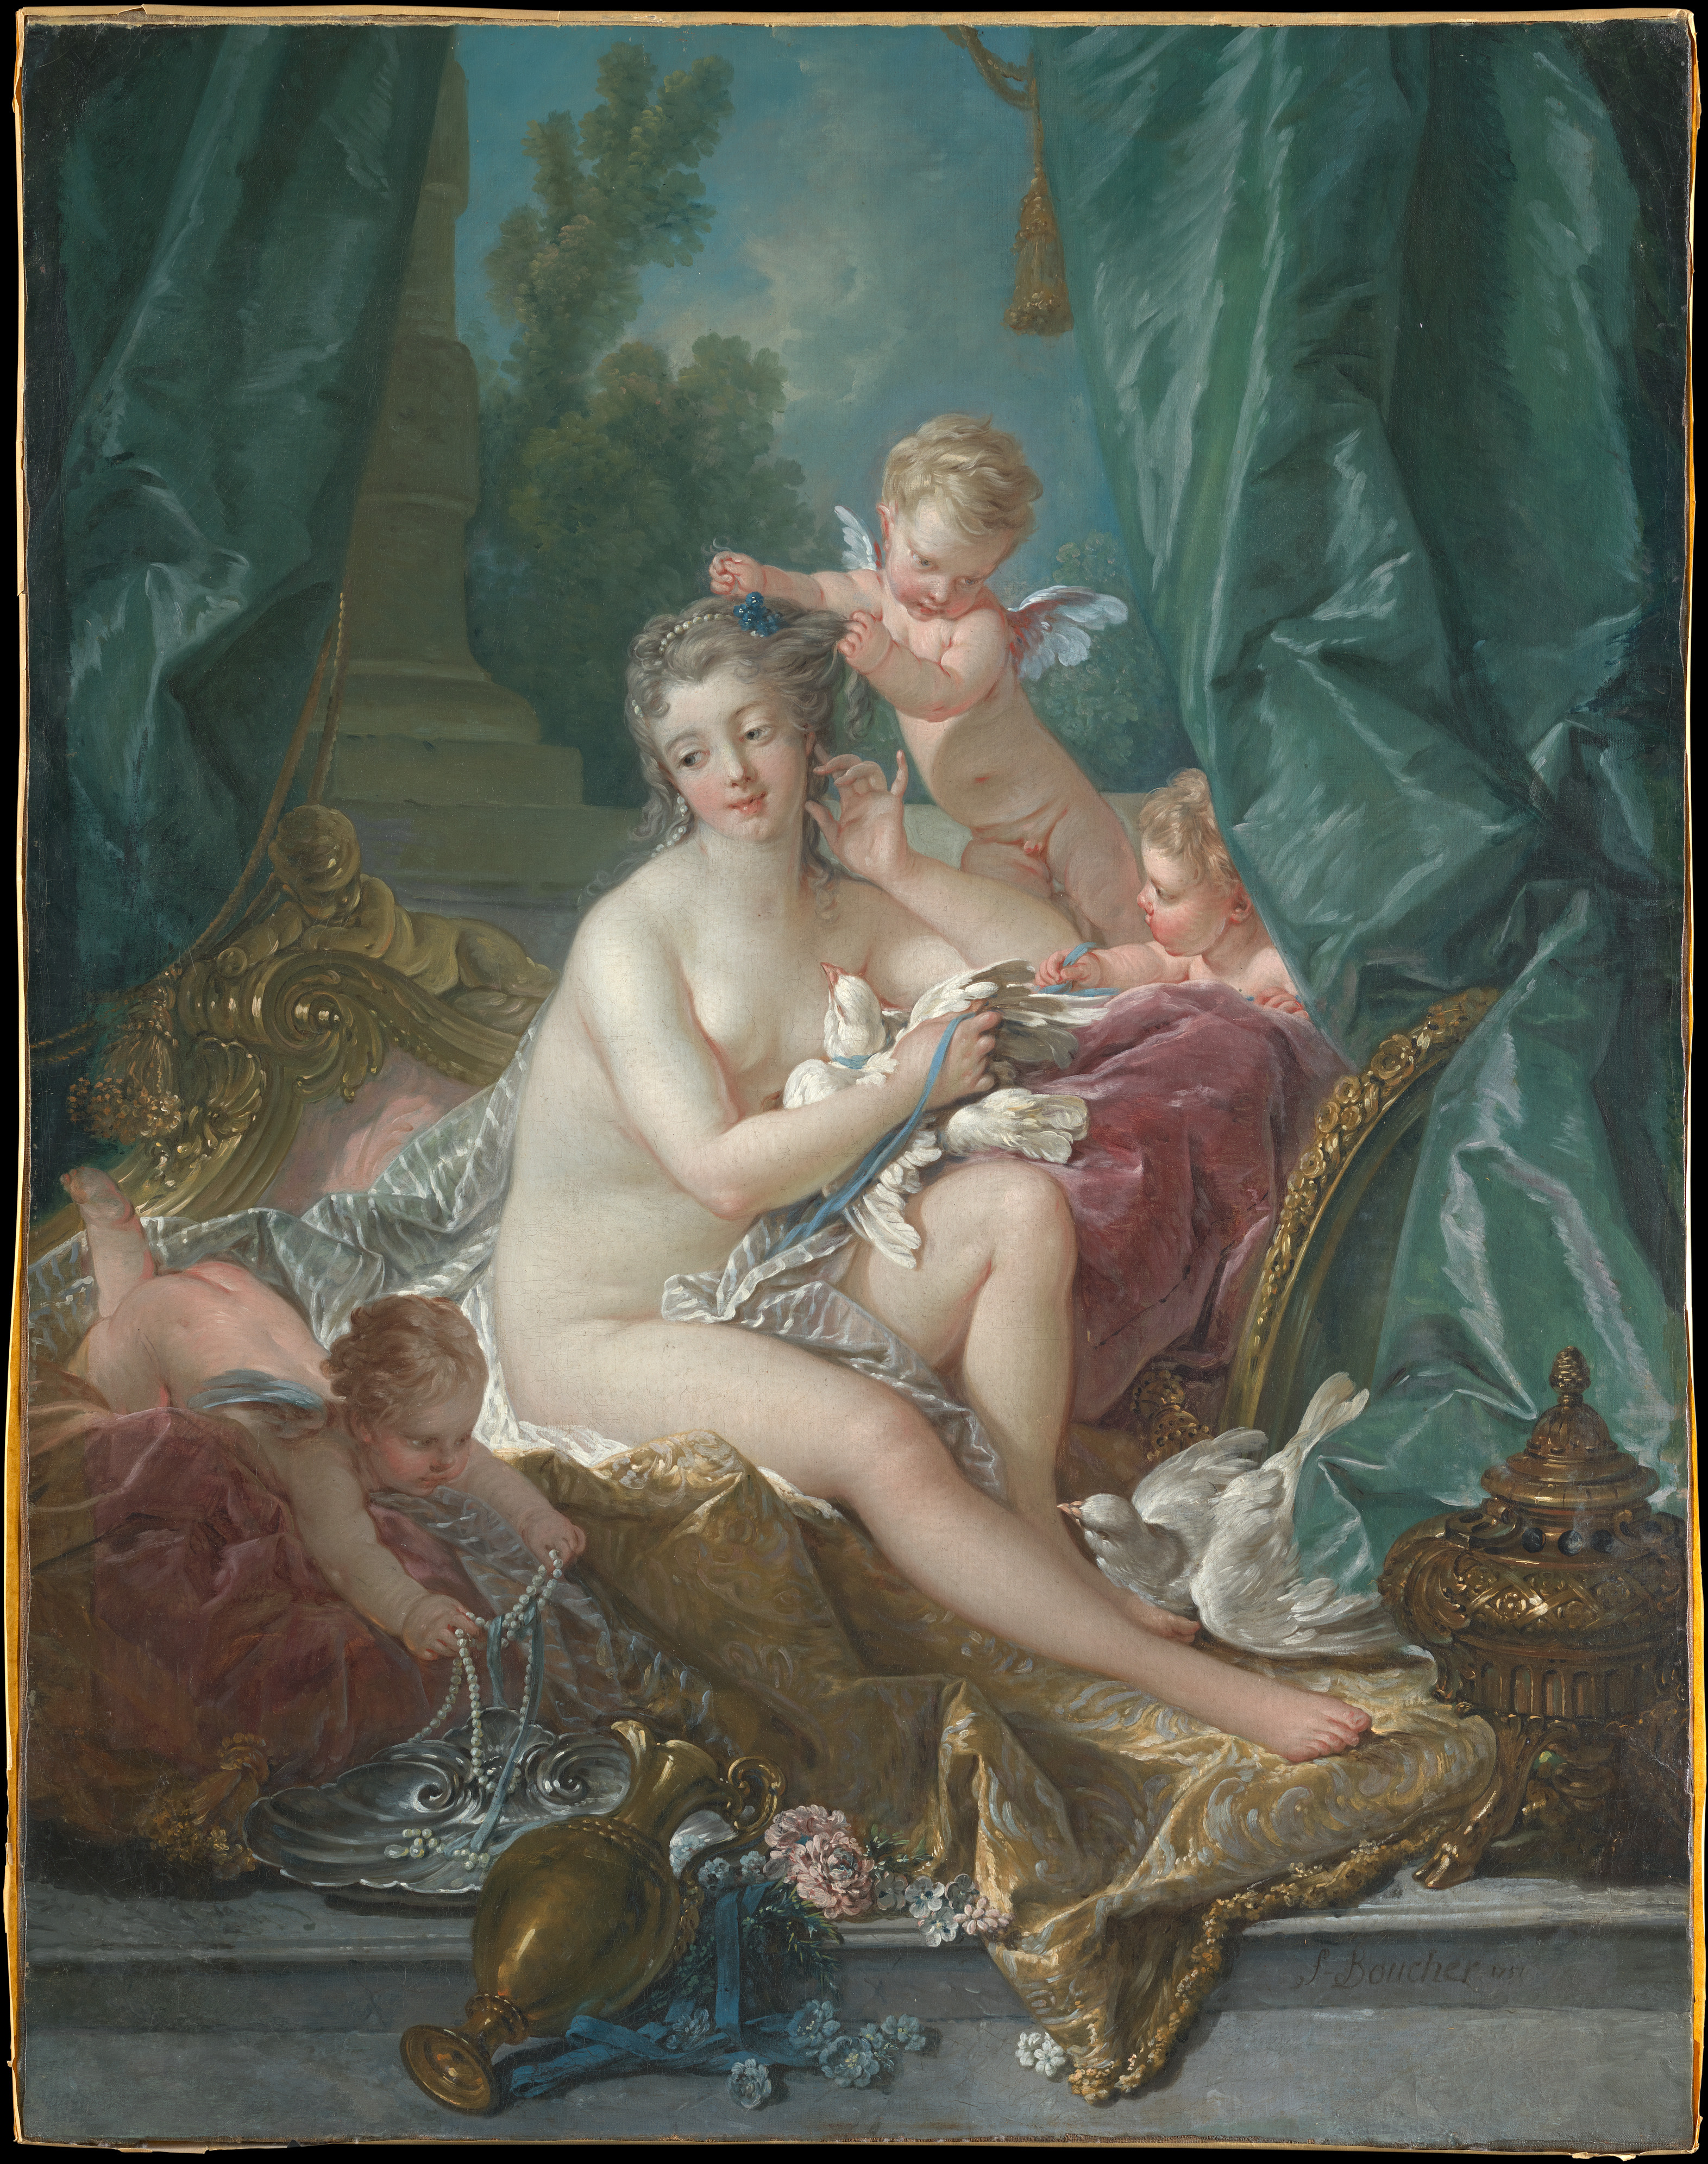 A Toalete de Vênus by Francois Boucher - 1751 